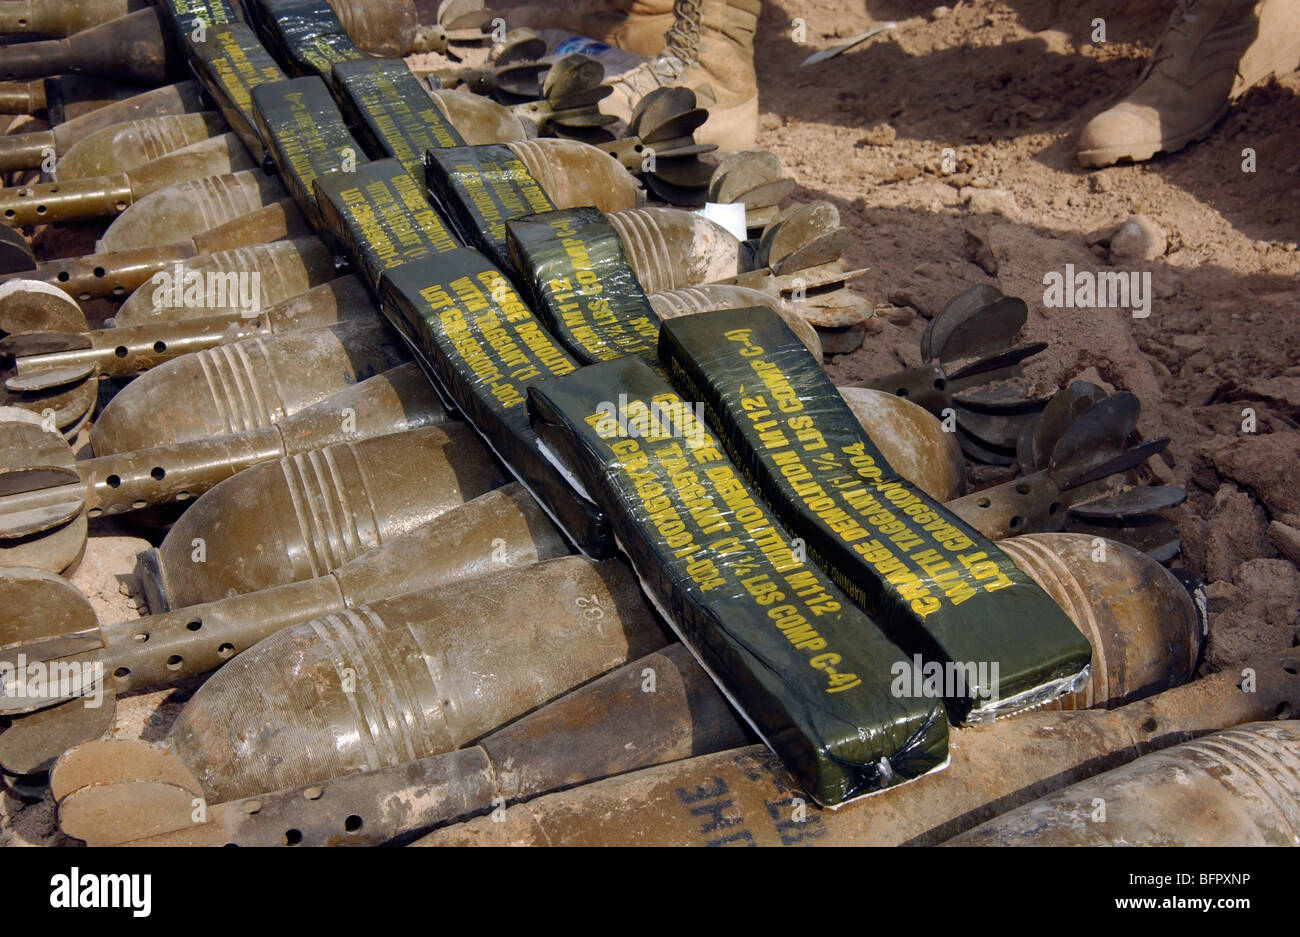 Asignado a la artillería dispersa de Explosivos (EOD) en Faw, Iraq. Foto de stock